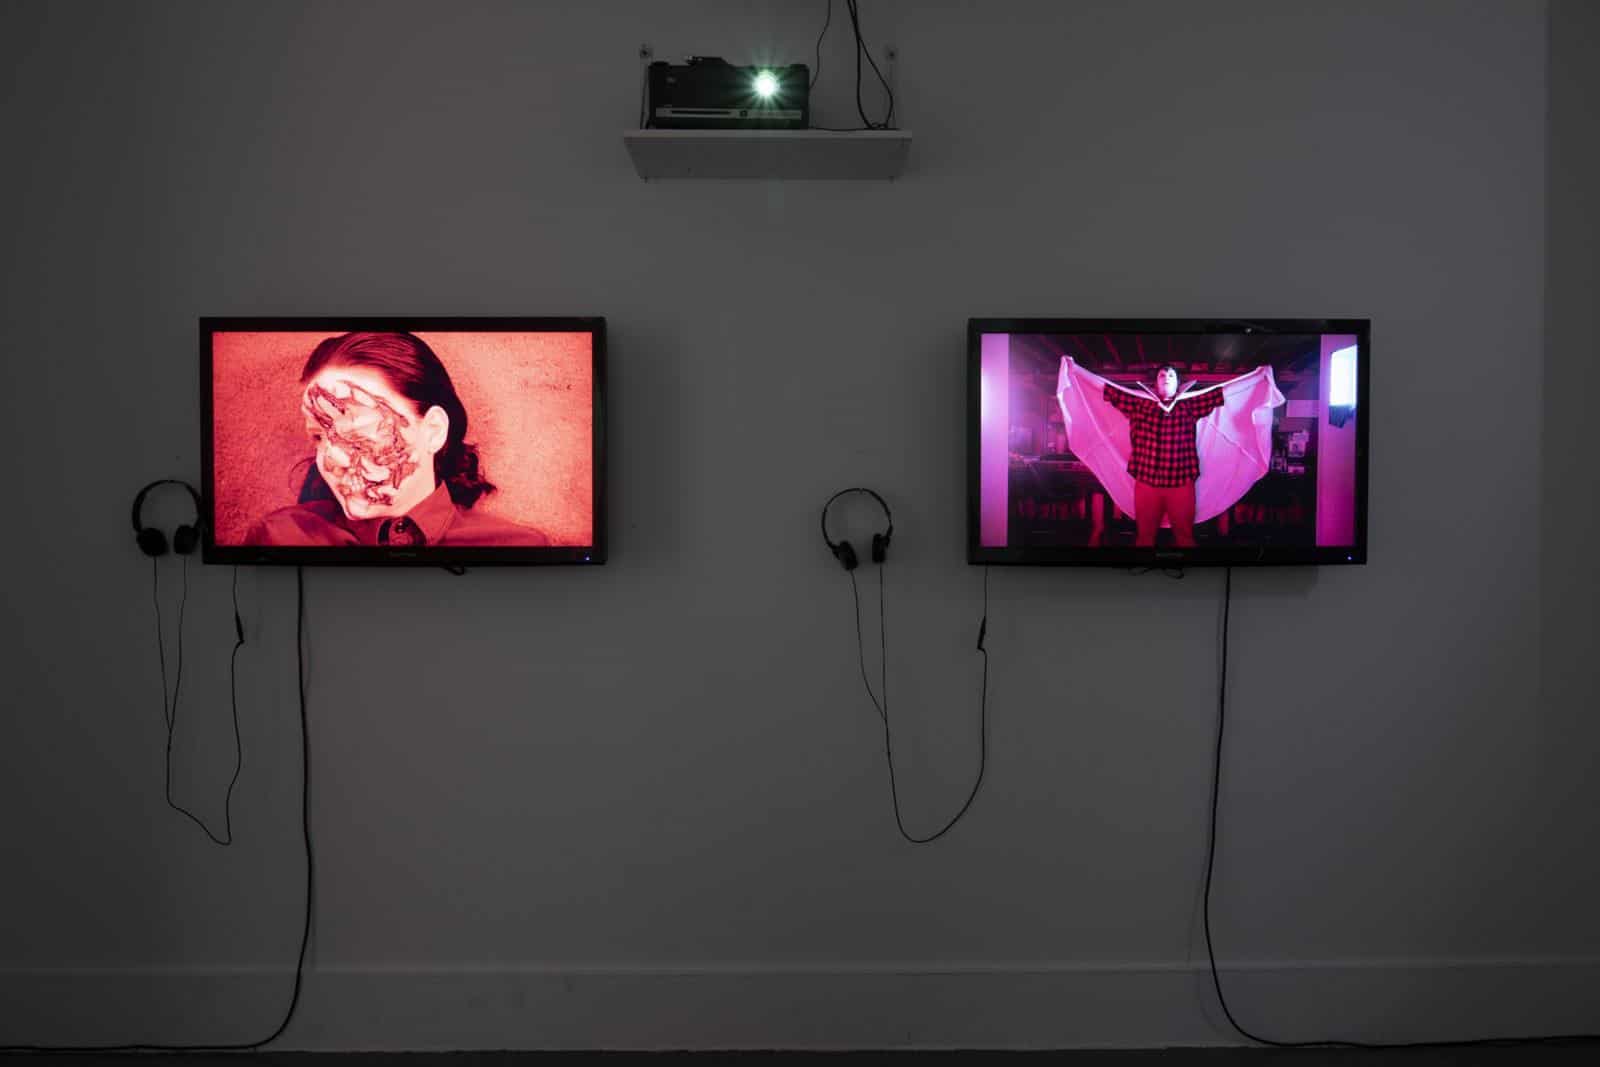 installation view "Willie Stewart: VIDEOS", 2019. Photo credit Jessica Smolinski.